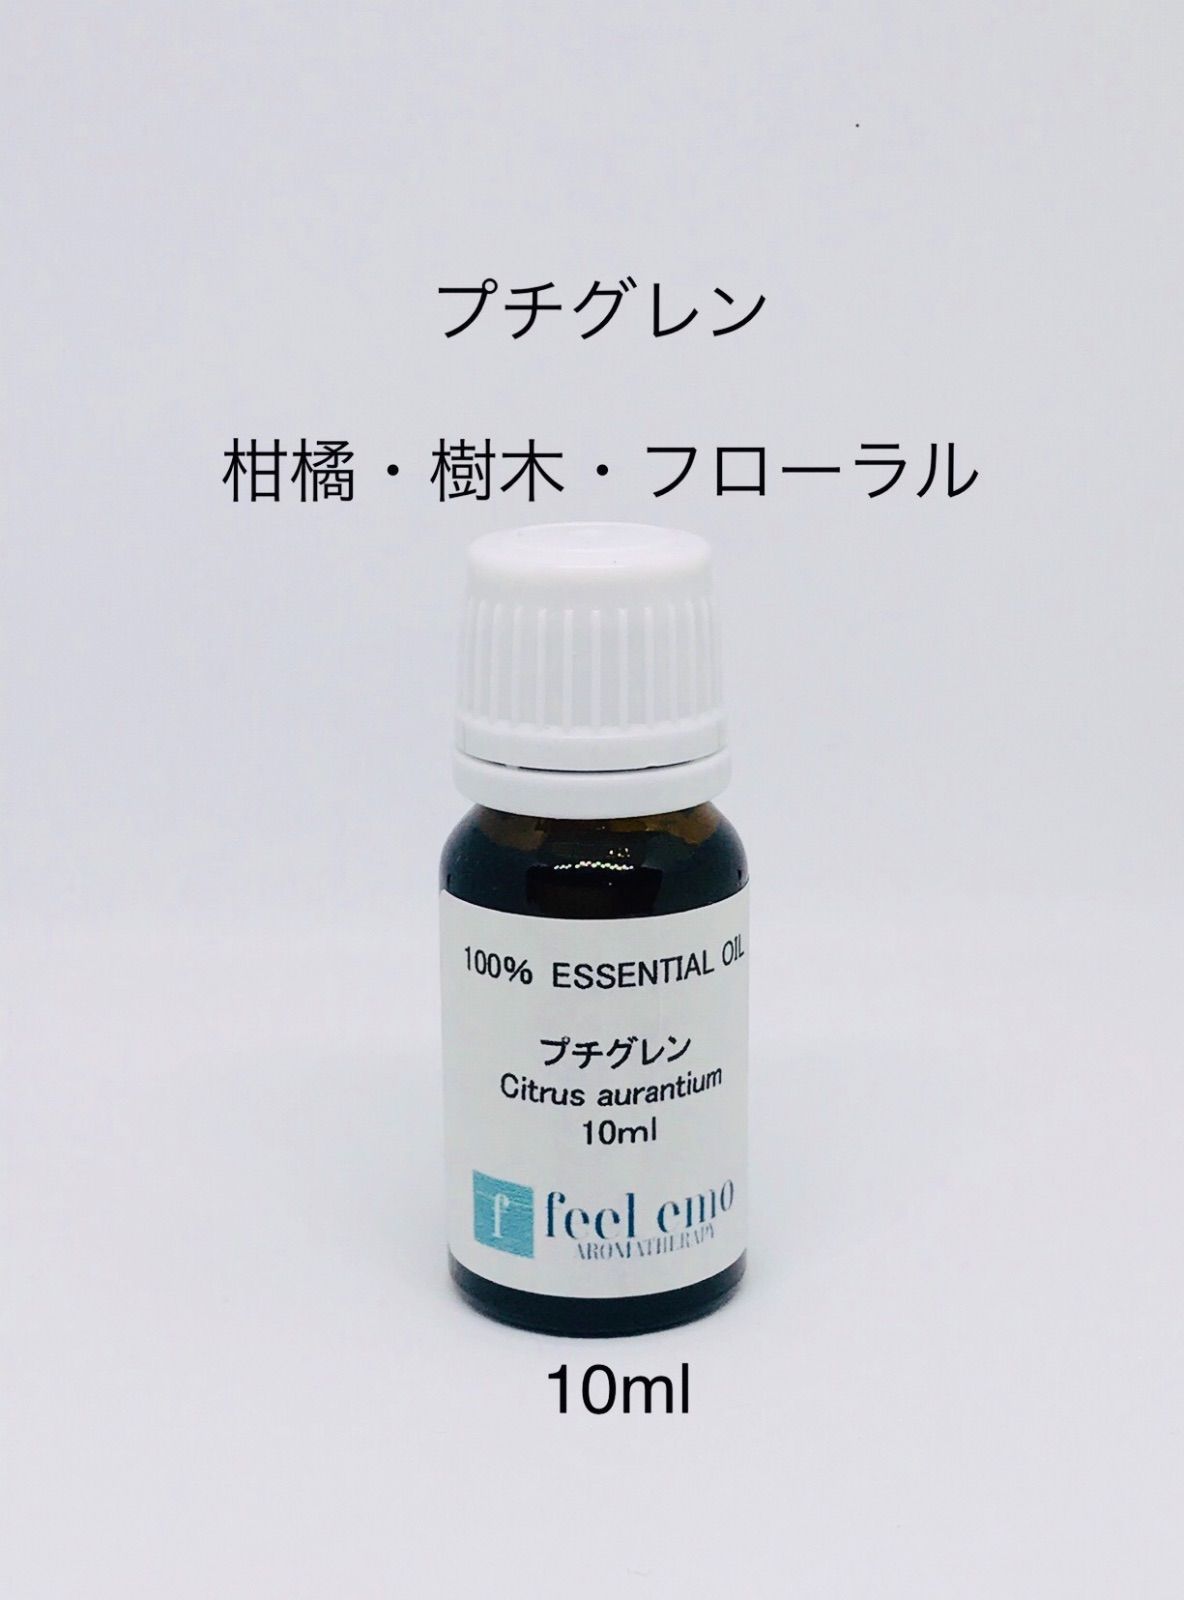 プチグレン10ml(エッセンシャルオイル・精油)